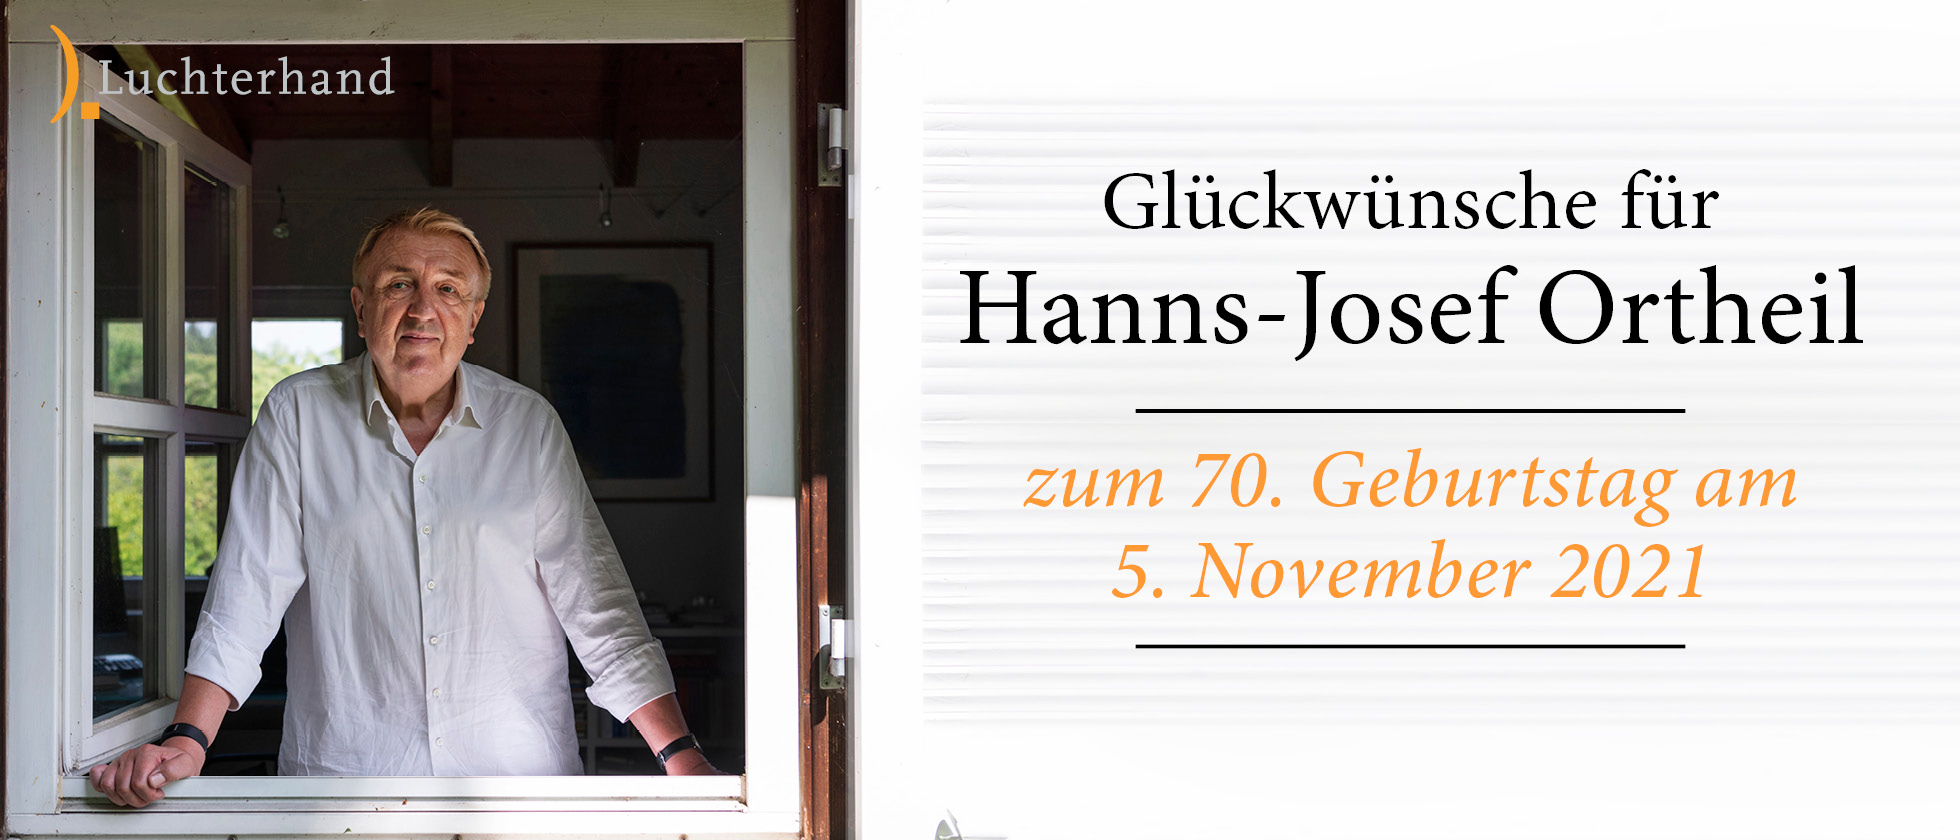 Glückwünsche für Hanns-Josef Ortheil